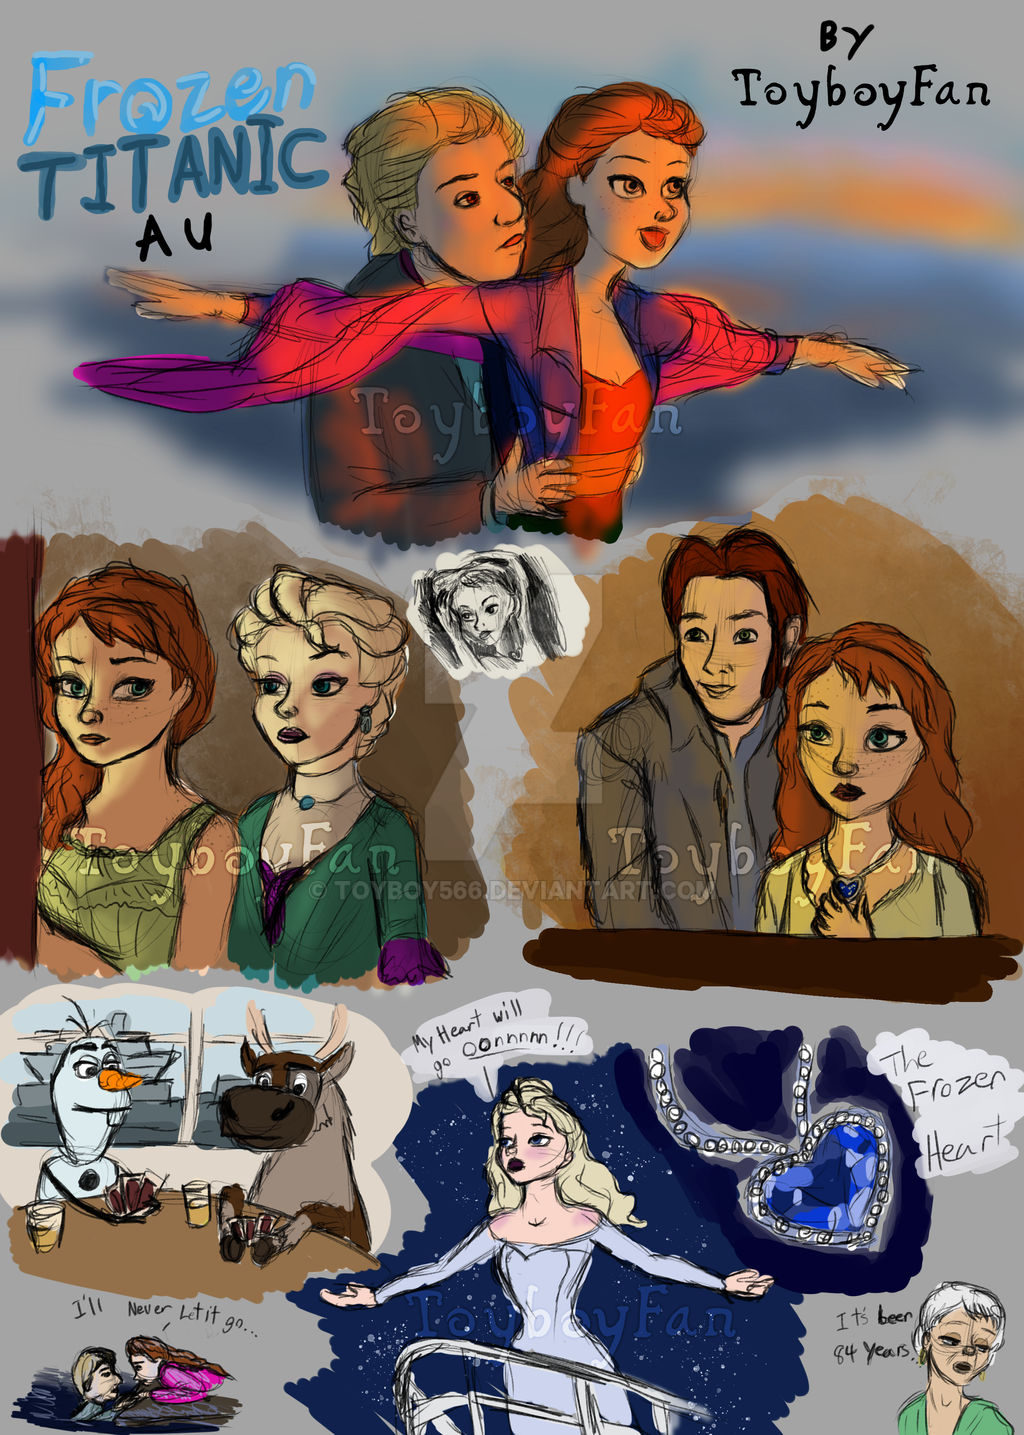 personnages - Les personnages Frozen dans d'autres univers. Frozen_titanic_au_sketch_dump_by_toyboy566_dc82sd4-fullview.jpg?token=eyJ0eXAiOiJKV1QiLCJhbGciOiJIUzI1NiJ9.eyJzdWIiOiJ1cm46YXBwOjdlMGQxODg5ODIyNjQzNzNhNWYwZDQxNWVhMGQyNmUwIiwiaXNzIjoidXJuOmFwcDo3ZTBkMTg4OTgyMjY0MzczYTVmMGQ0MTVlYTBkMjZlMCIsIm9iaiI6W1t7InBhdGgiOiJcL2ZcLzY0Zjc0MGE3LTVmNDgtNGJiNC1hMzE4LWY3ZWExNjBjZmNlMlwvZGM4MnNkNC1hZGZhOGNlNy0xYmI2LTQ4MjAtYmUzZS05Y2MwNjI3MzRmZDcucG5nIiwiaGVpZ2h0IjoiPD0xNDM1Iiwid2lkdGgiOiI8PTEwMjQifV1dLCJhdWQiOlsidXJuOnNlcnZpY2U6aW1hZ2Uud2F0ZXJtYXJrIl0sIndtayI6eyJwYXRoIjoiXC93bVwvNjRmNzQwYTctNWY0OC00YmI0LWEzMTgtZjdlYTE2MGNmY2UyXC90b3lib3k1NjYtNC5wbmciLCJvcGFjaXR5Ijo5NSwicHJvcG9ydGlvbnMiOjAuNDUsImdyYXZpdHkiOiJjZW50ZXIifX0